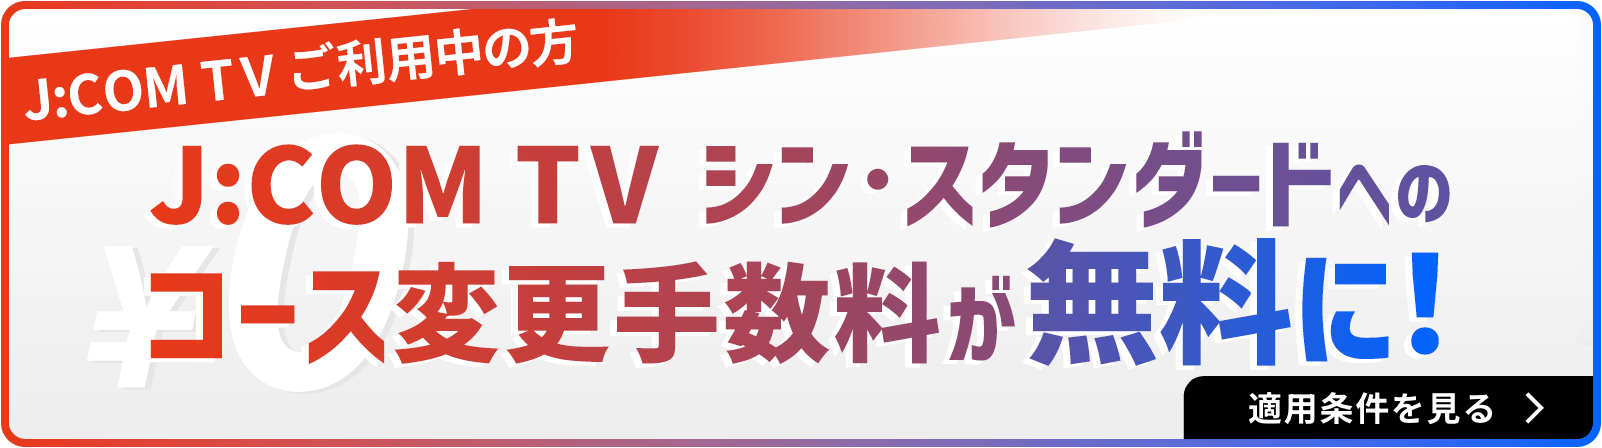 J:COM TV Shin Standard is free!